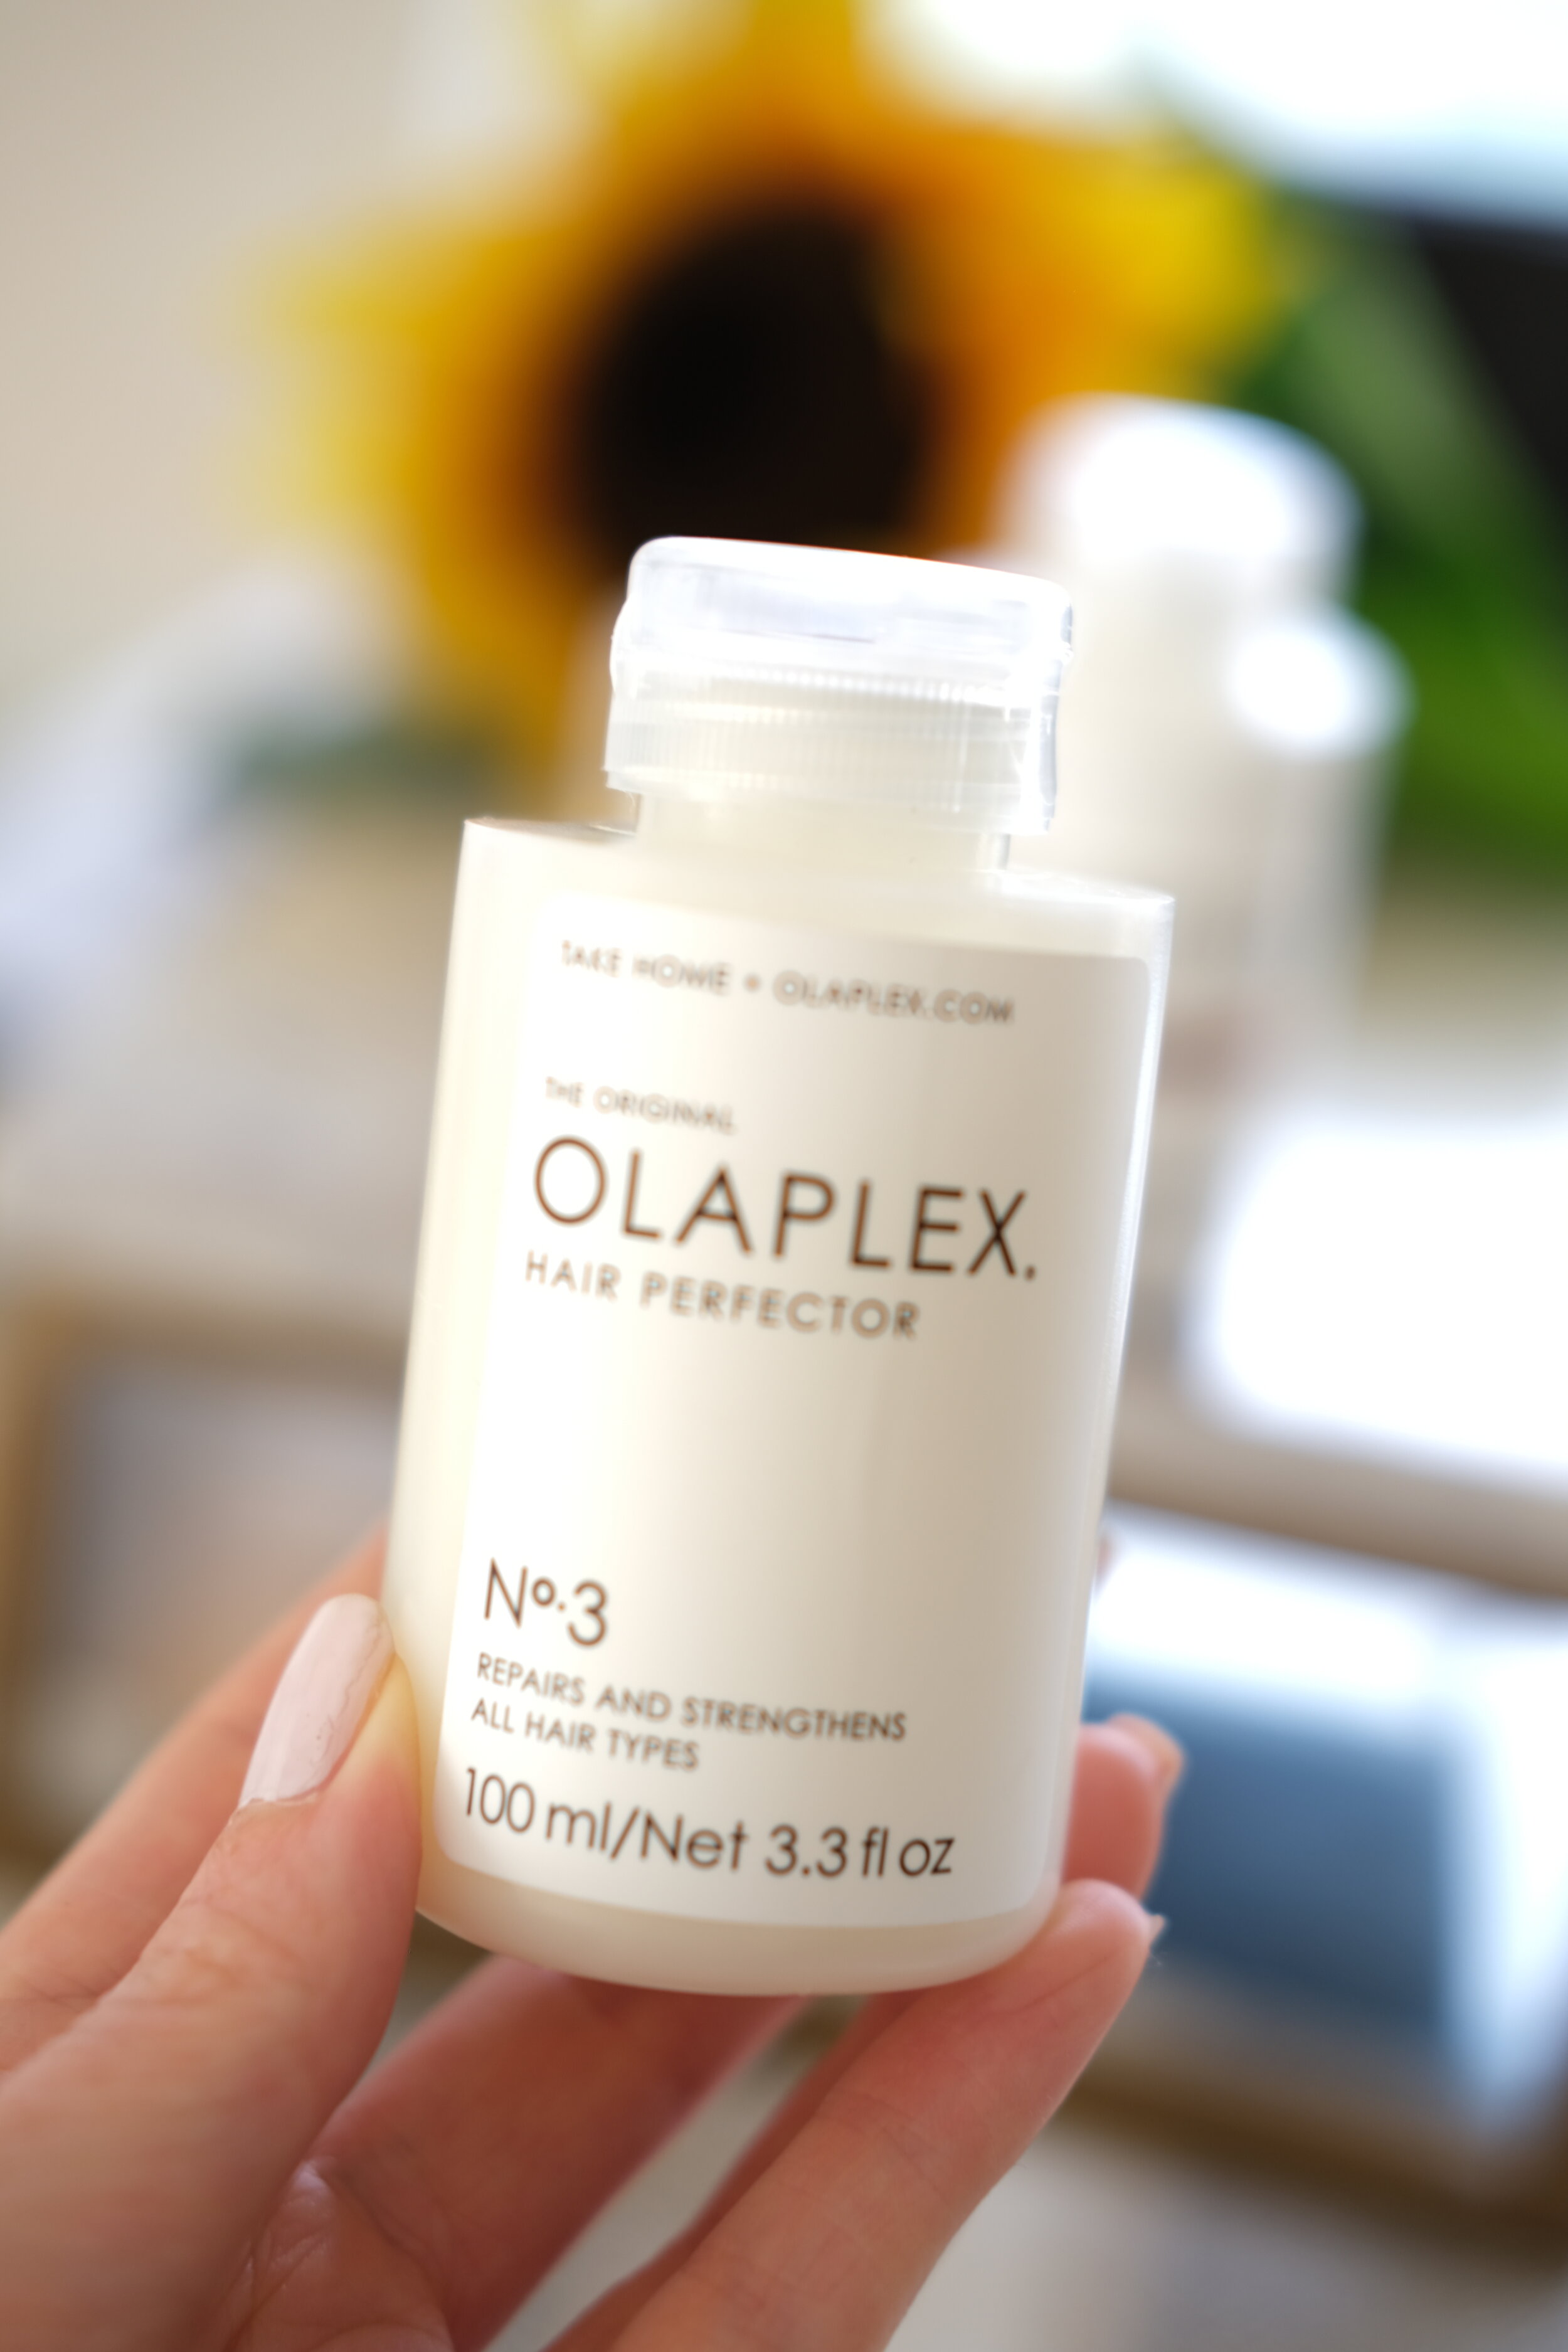 Olaplex Hair Review - Olaplex No.3 Hair Perfector Review. 